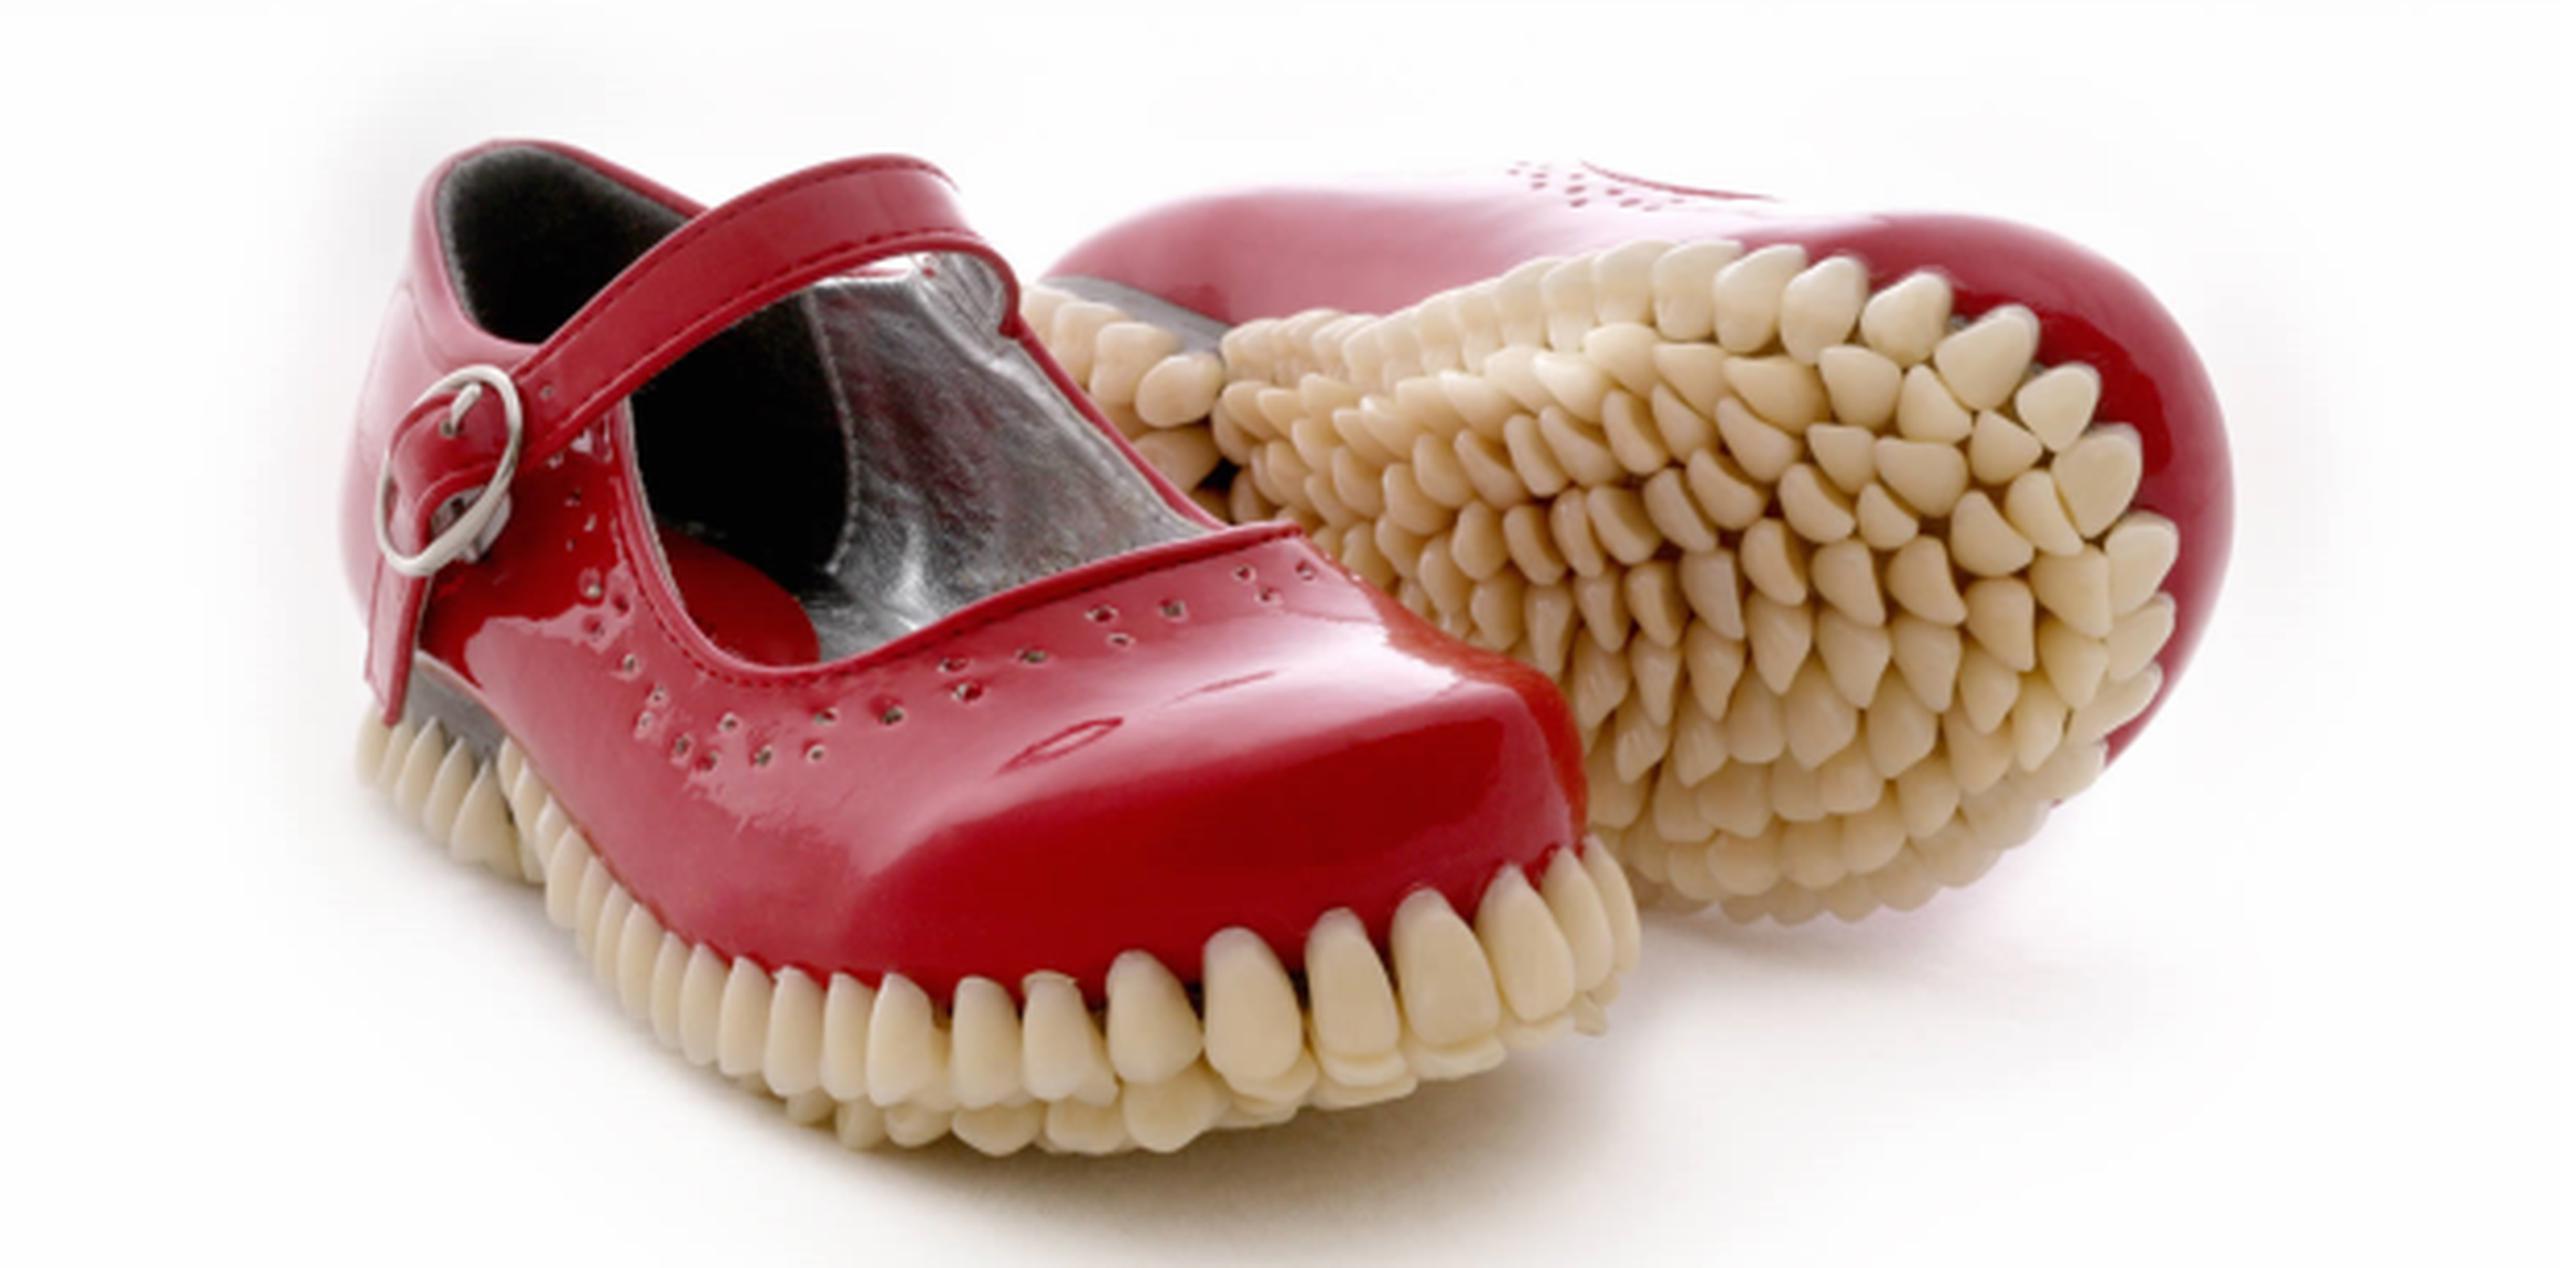 Zapatos con suela de dientes. (YouTube)